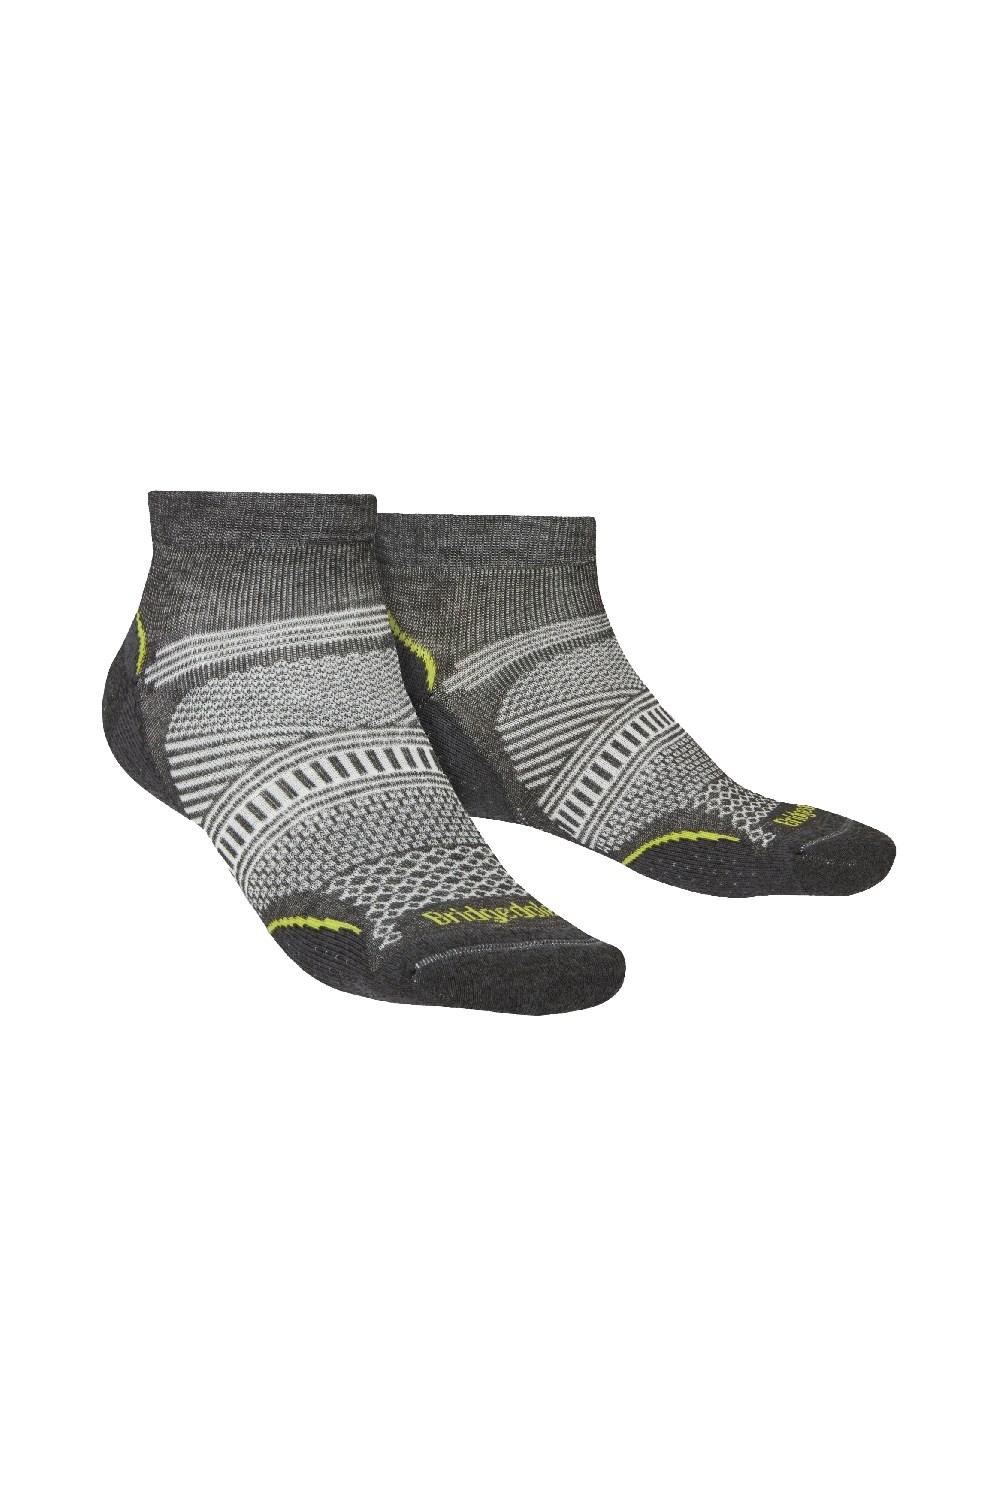 Mens Ultralight T2 Coolmax Low Hiking Socks